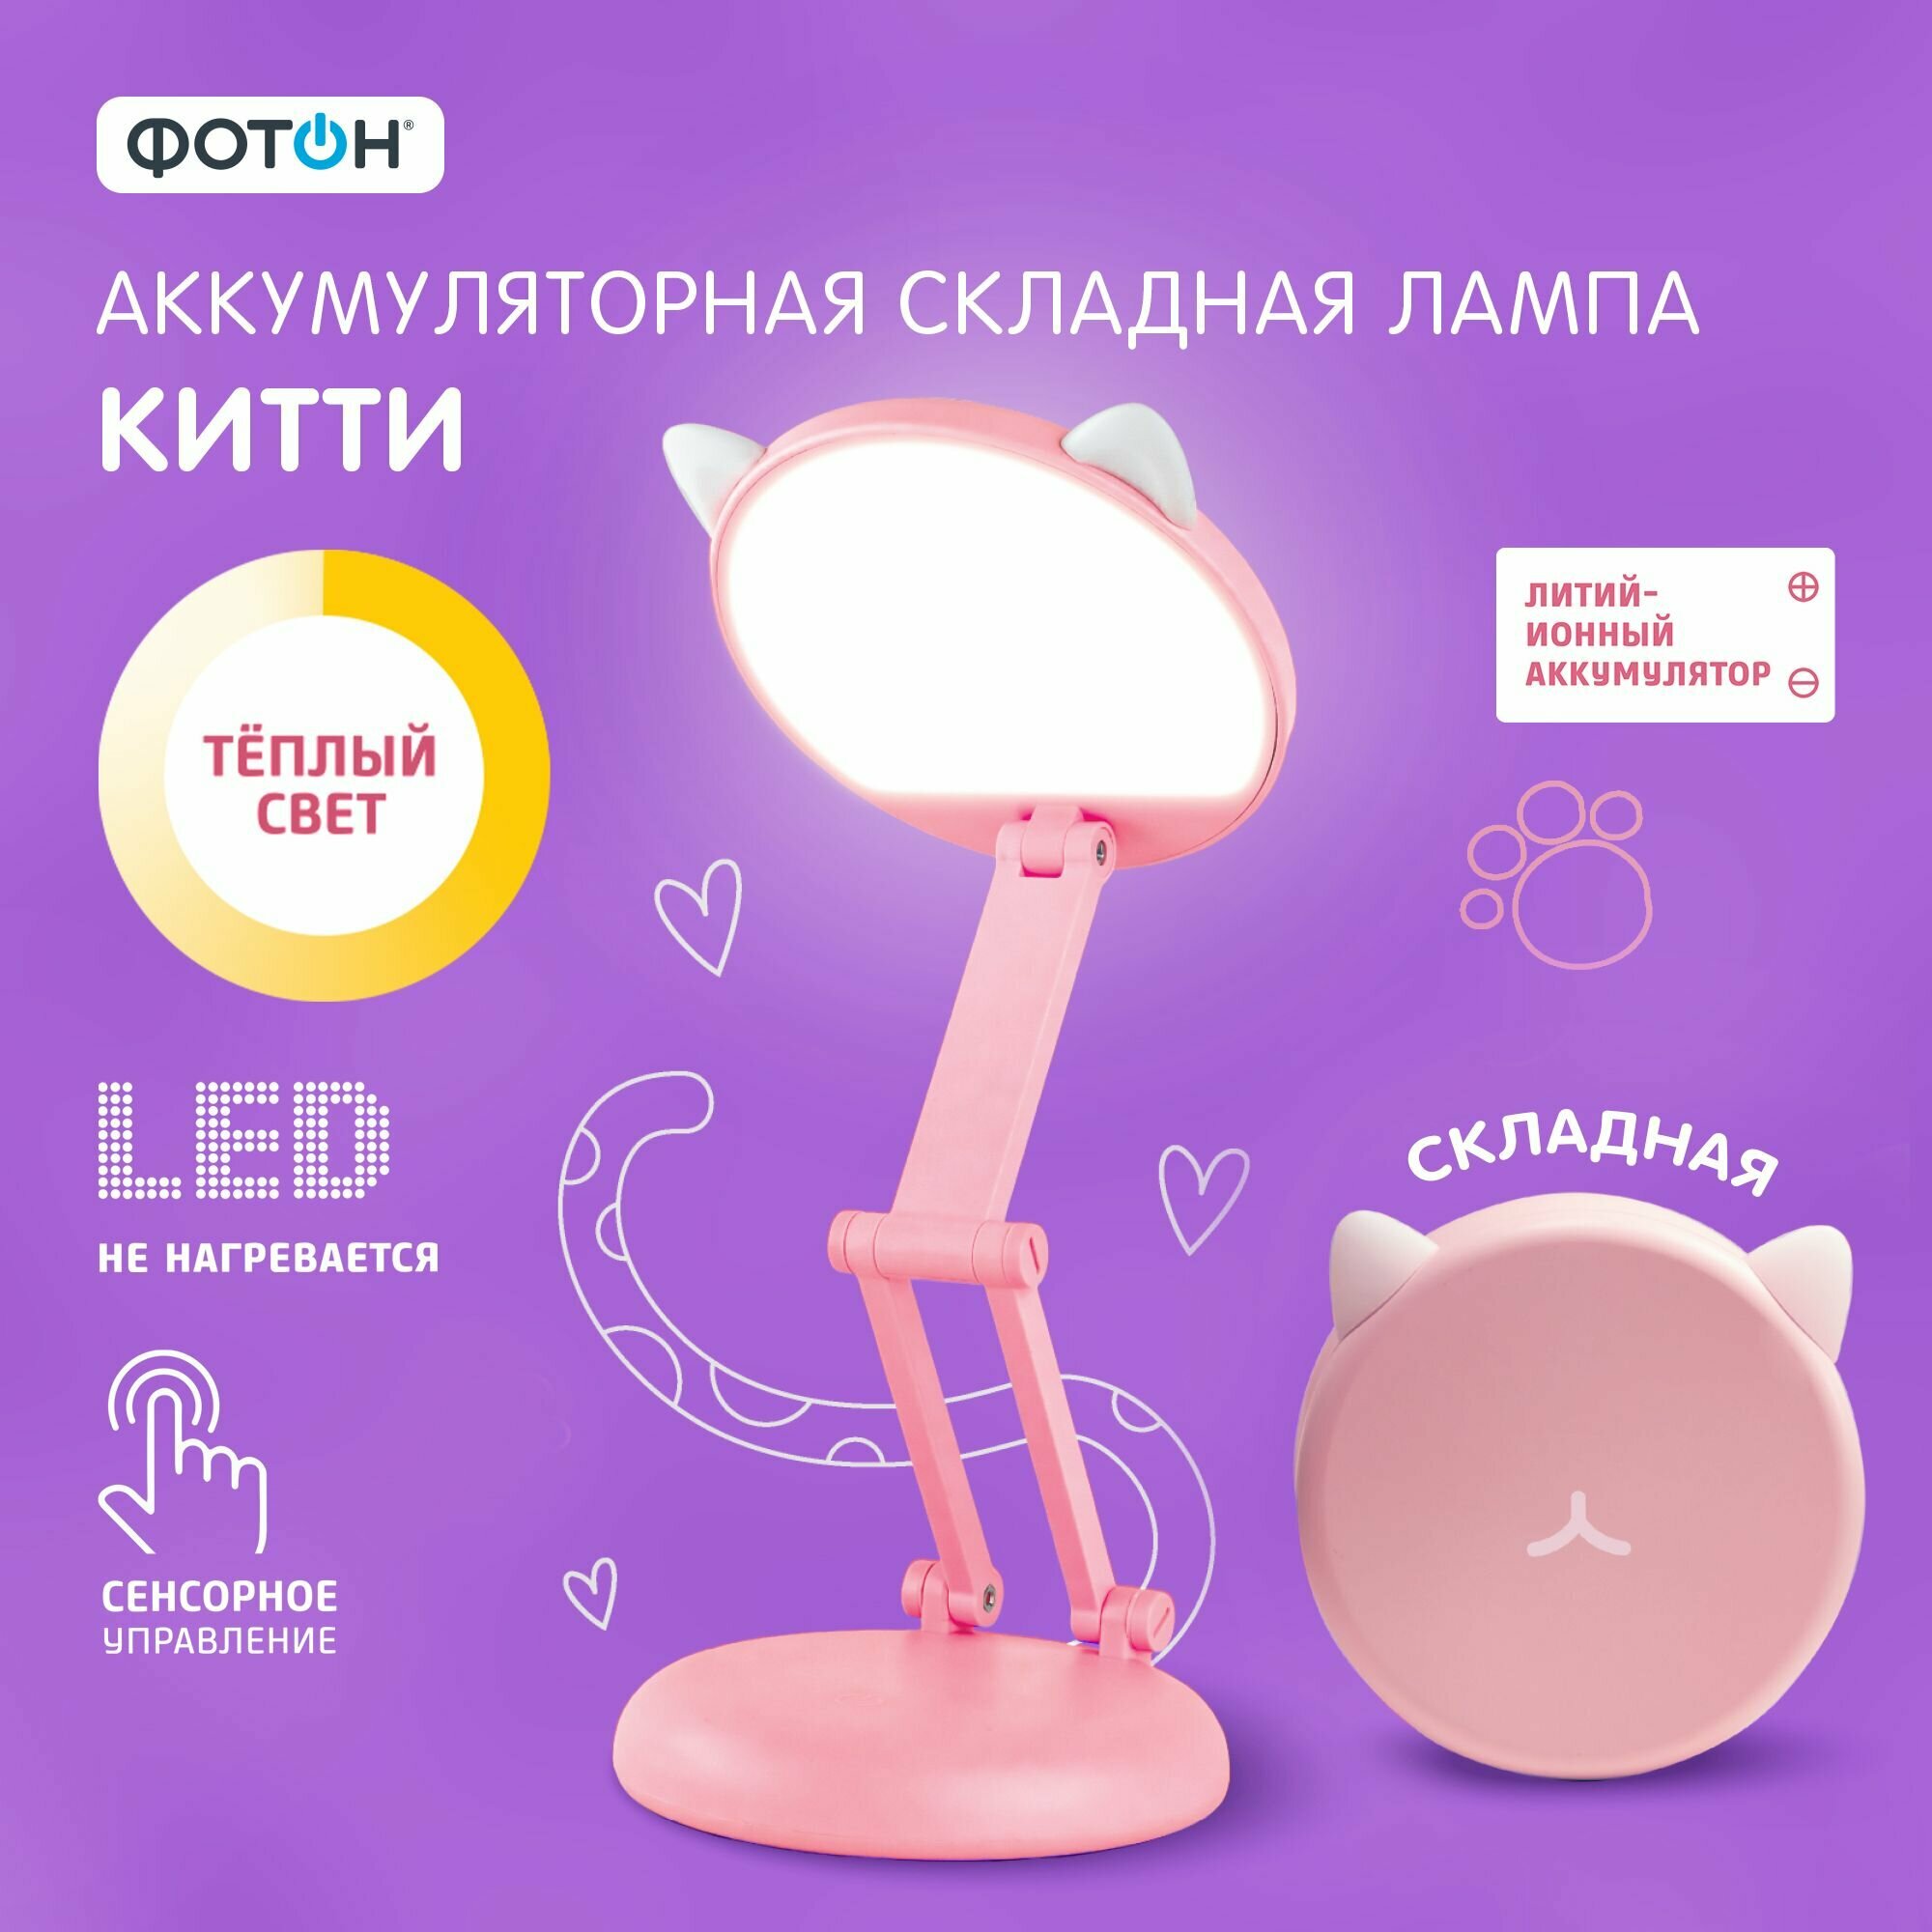 Настольная лампа ФОТОН Китти складная аккумуляторная, розовая